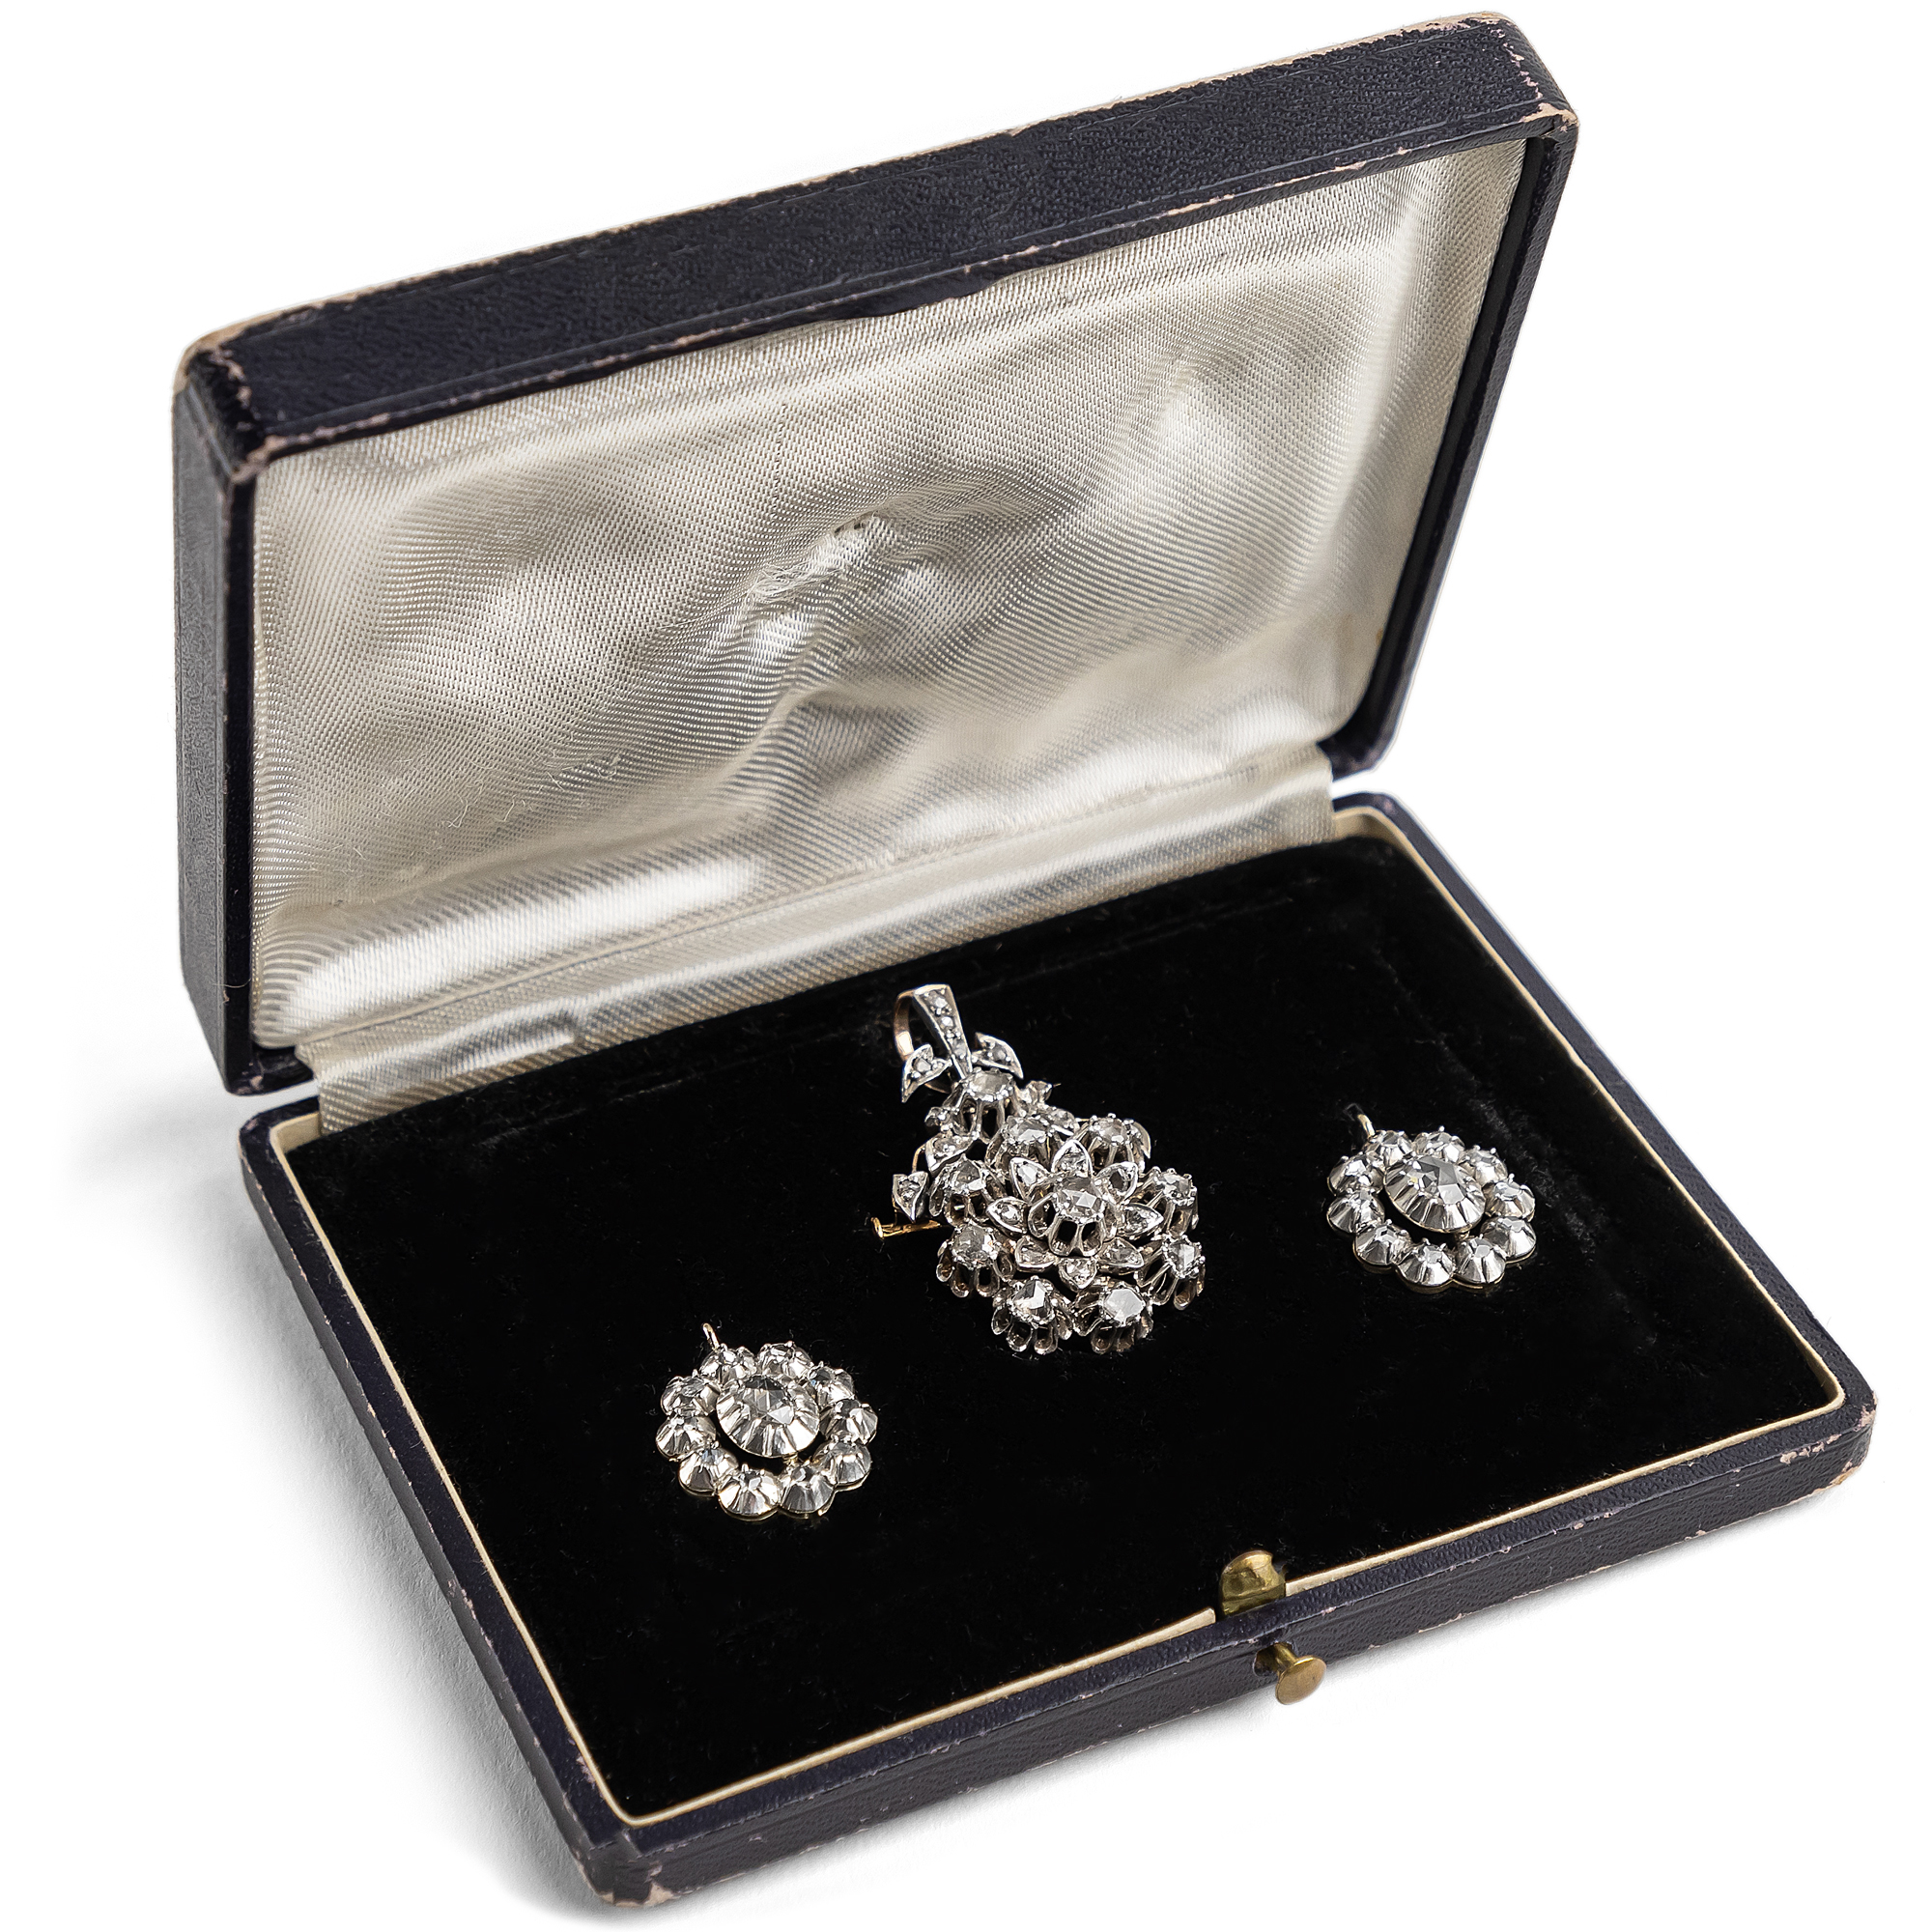 Romantic Demi-Parure With Diamond Roses In Silver & Gold, Circa 1870 Or Circa 1935